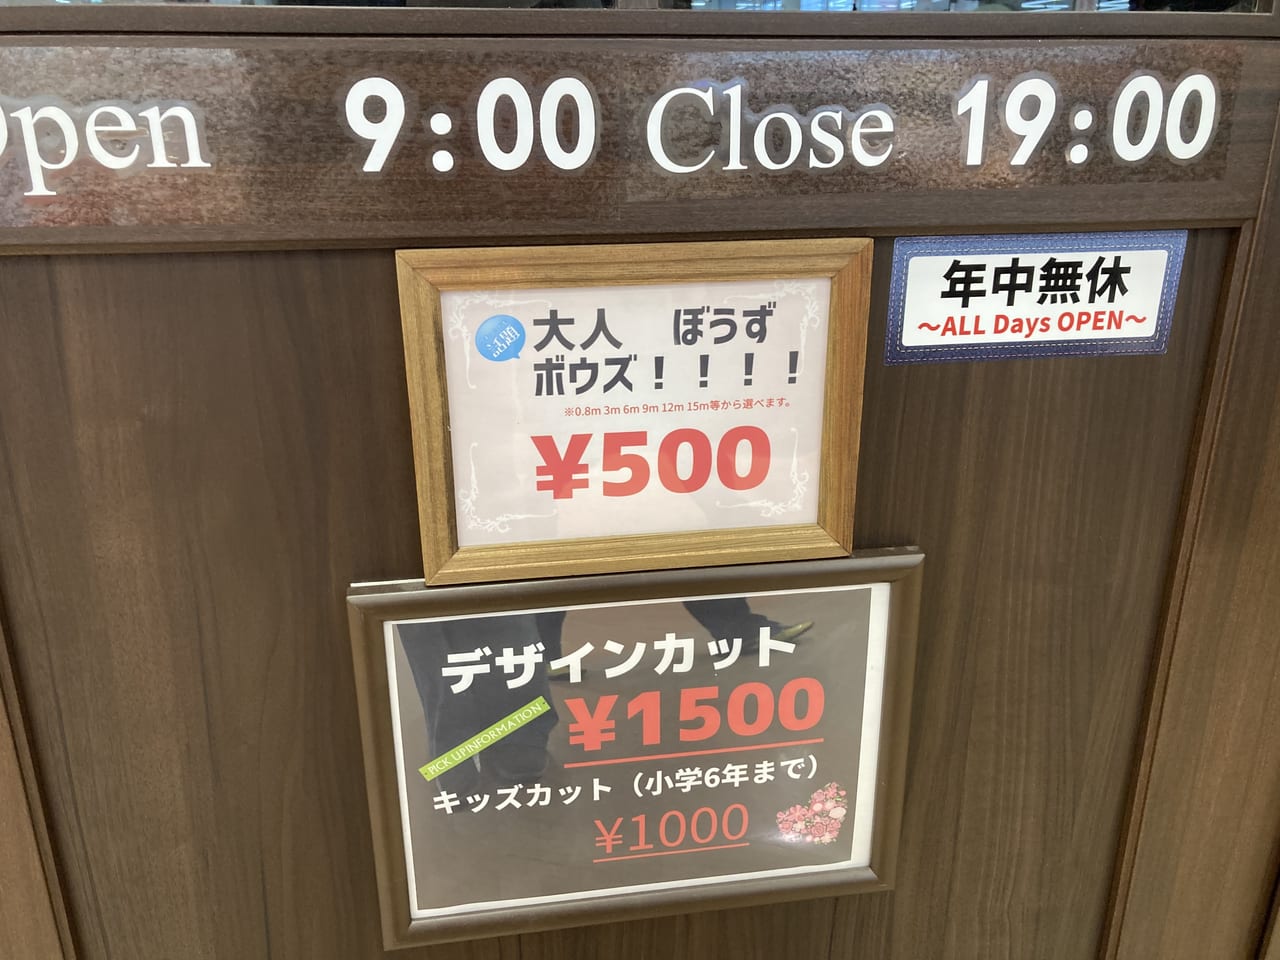 松阪市 大人ぼうずがワンコイン500円 ヘアーズアーティスト は あの スーパー内で年中無休です 号外net 松阪市